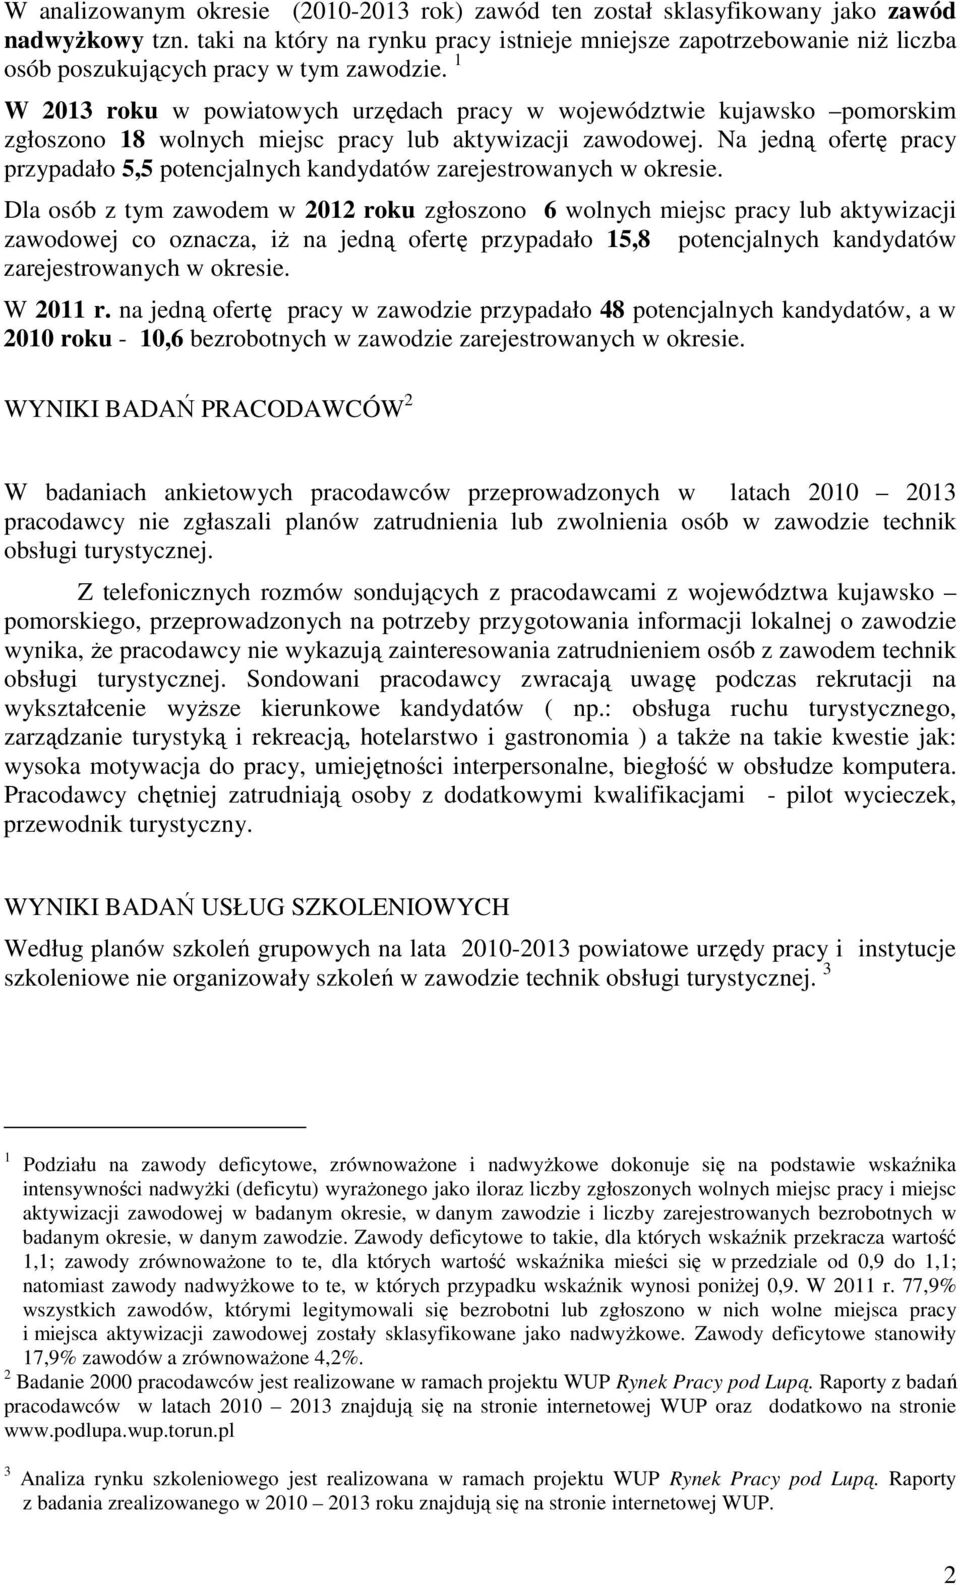 1 W 2013 roku w powiatowych urzędach pracy w województwie kujawsko pomorskim zgłoszono 18 wolnych miejsc pracy lub aktywizacji zawodowej.